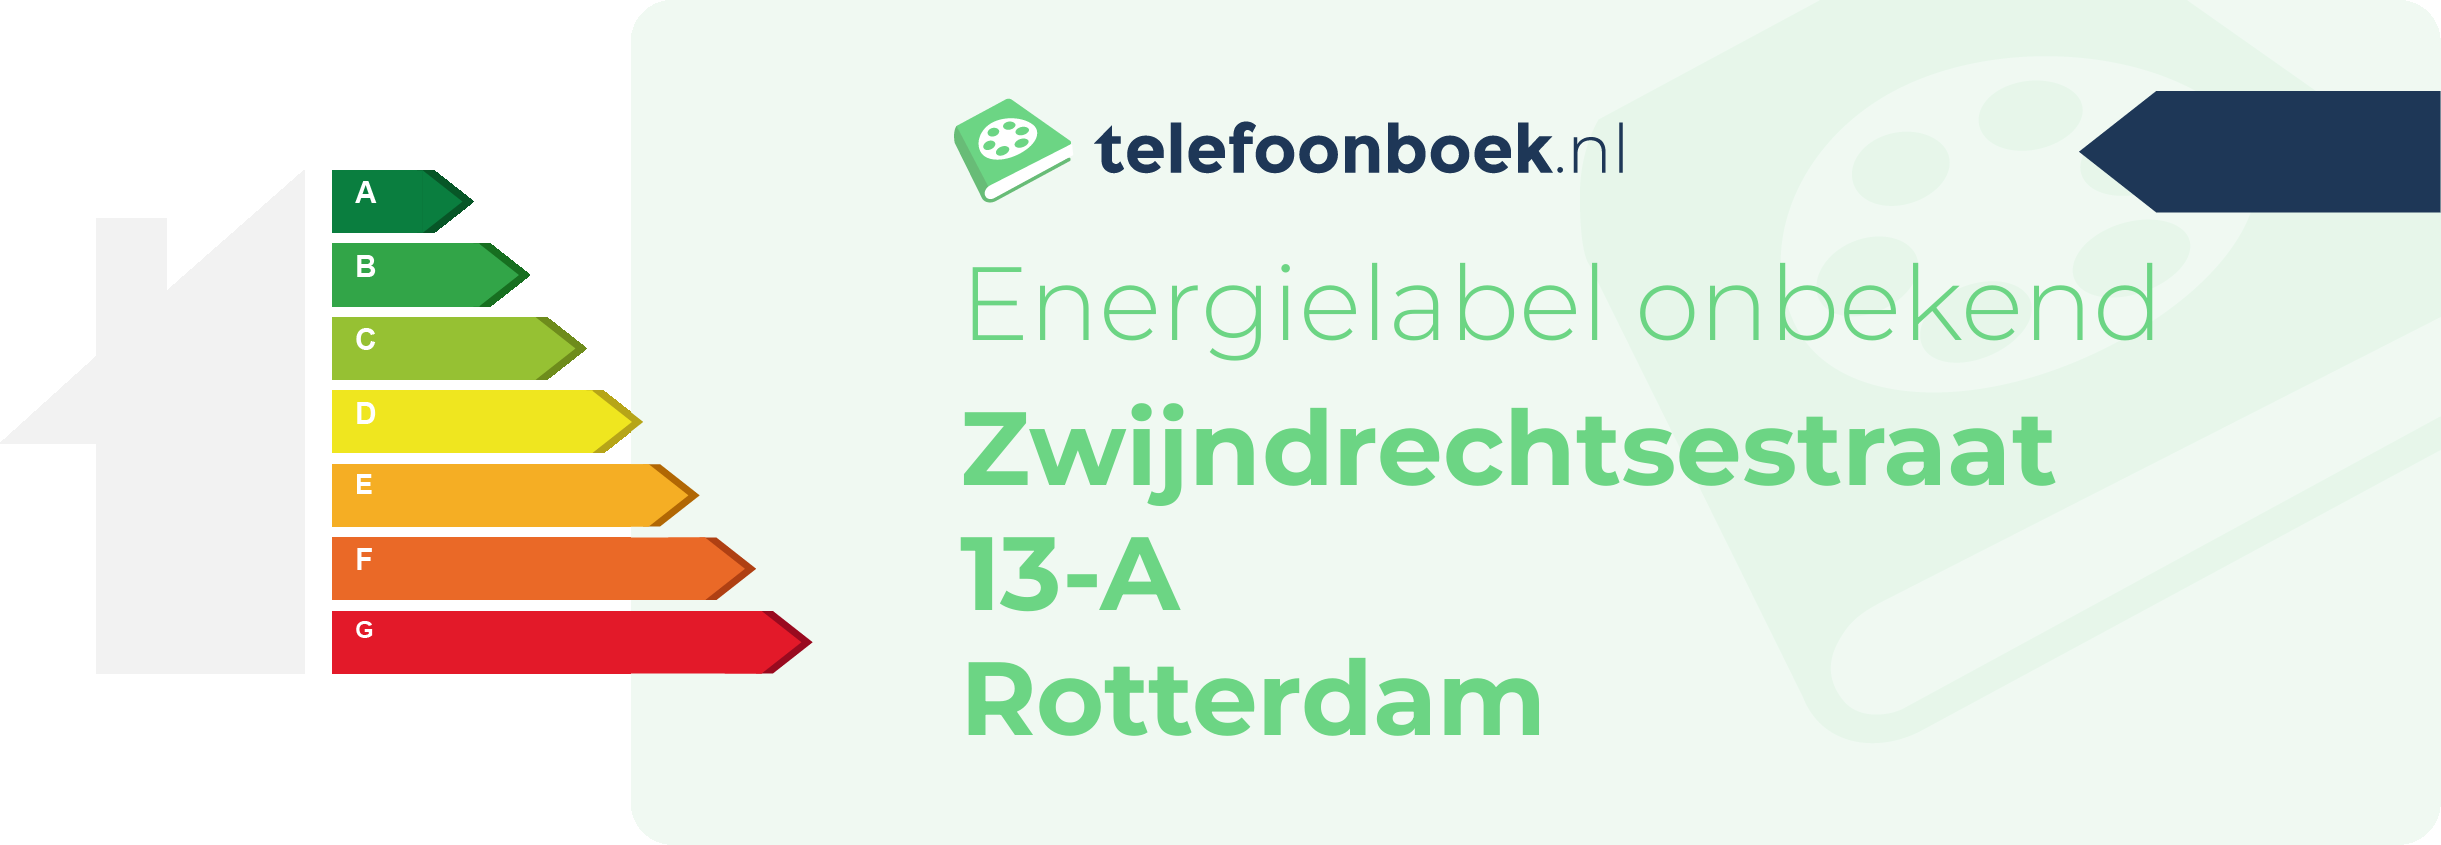 Energielabel Zwijndrechtsestraat 13-A Rotterdam